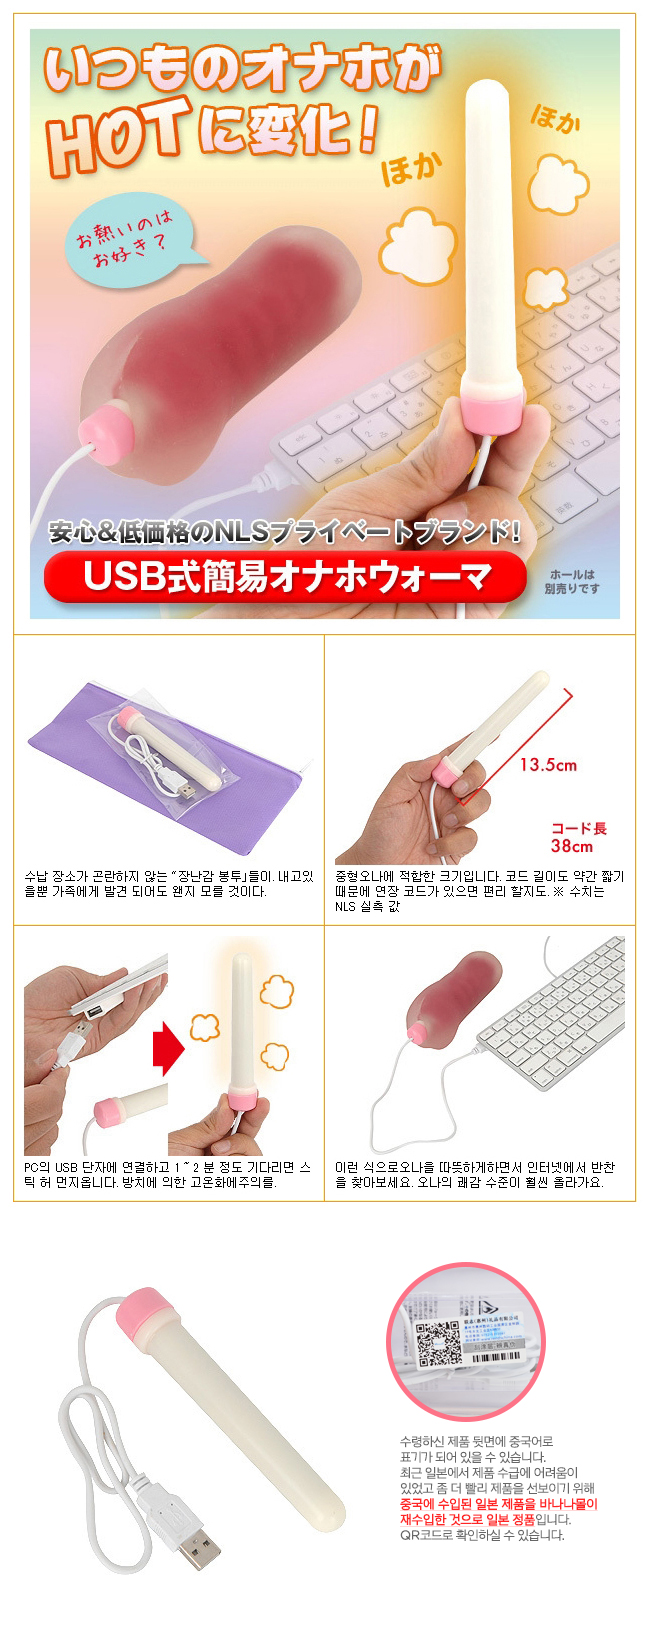 [일본 직수입] USB 간이식 오나홀 워머(USB式簡易オナホウォーマ)